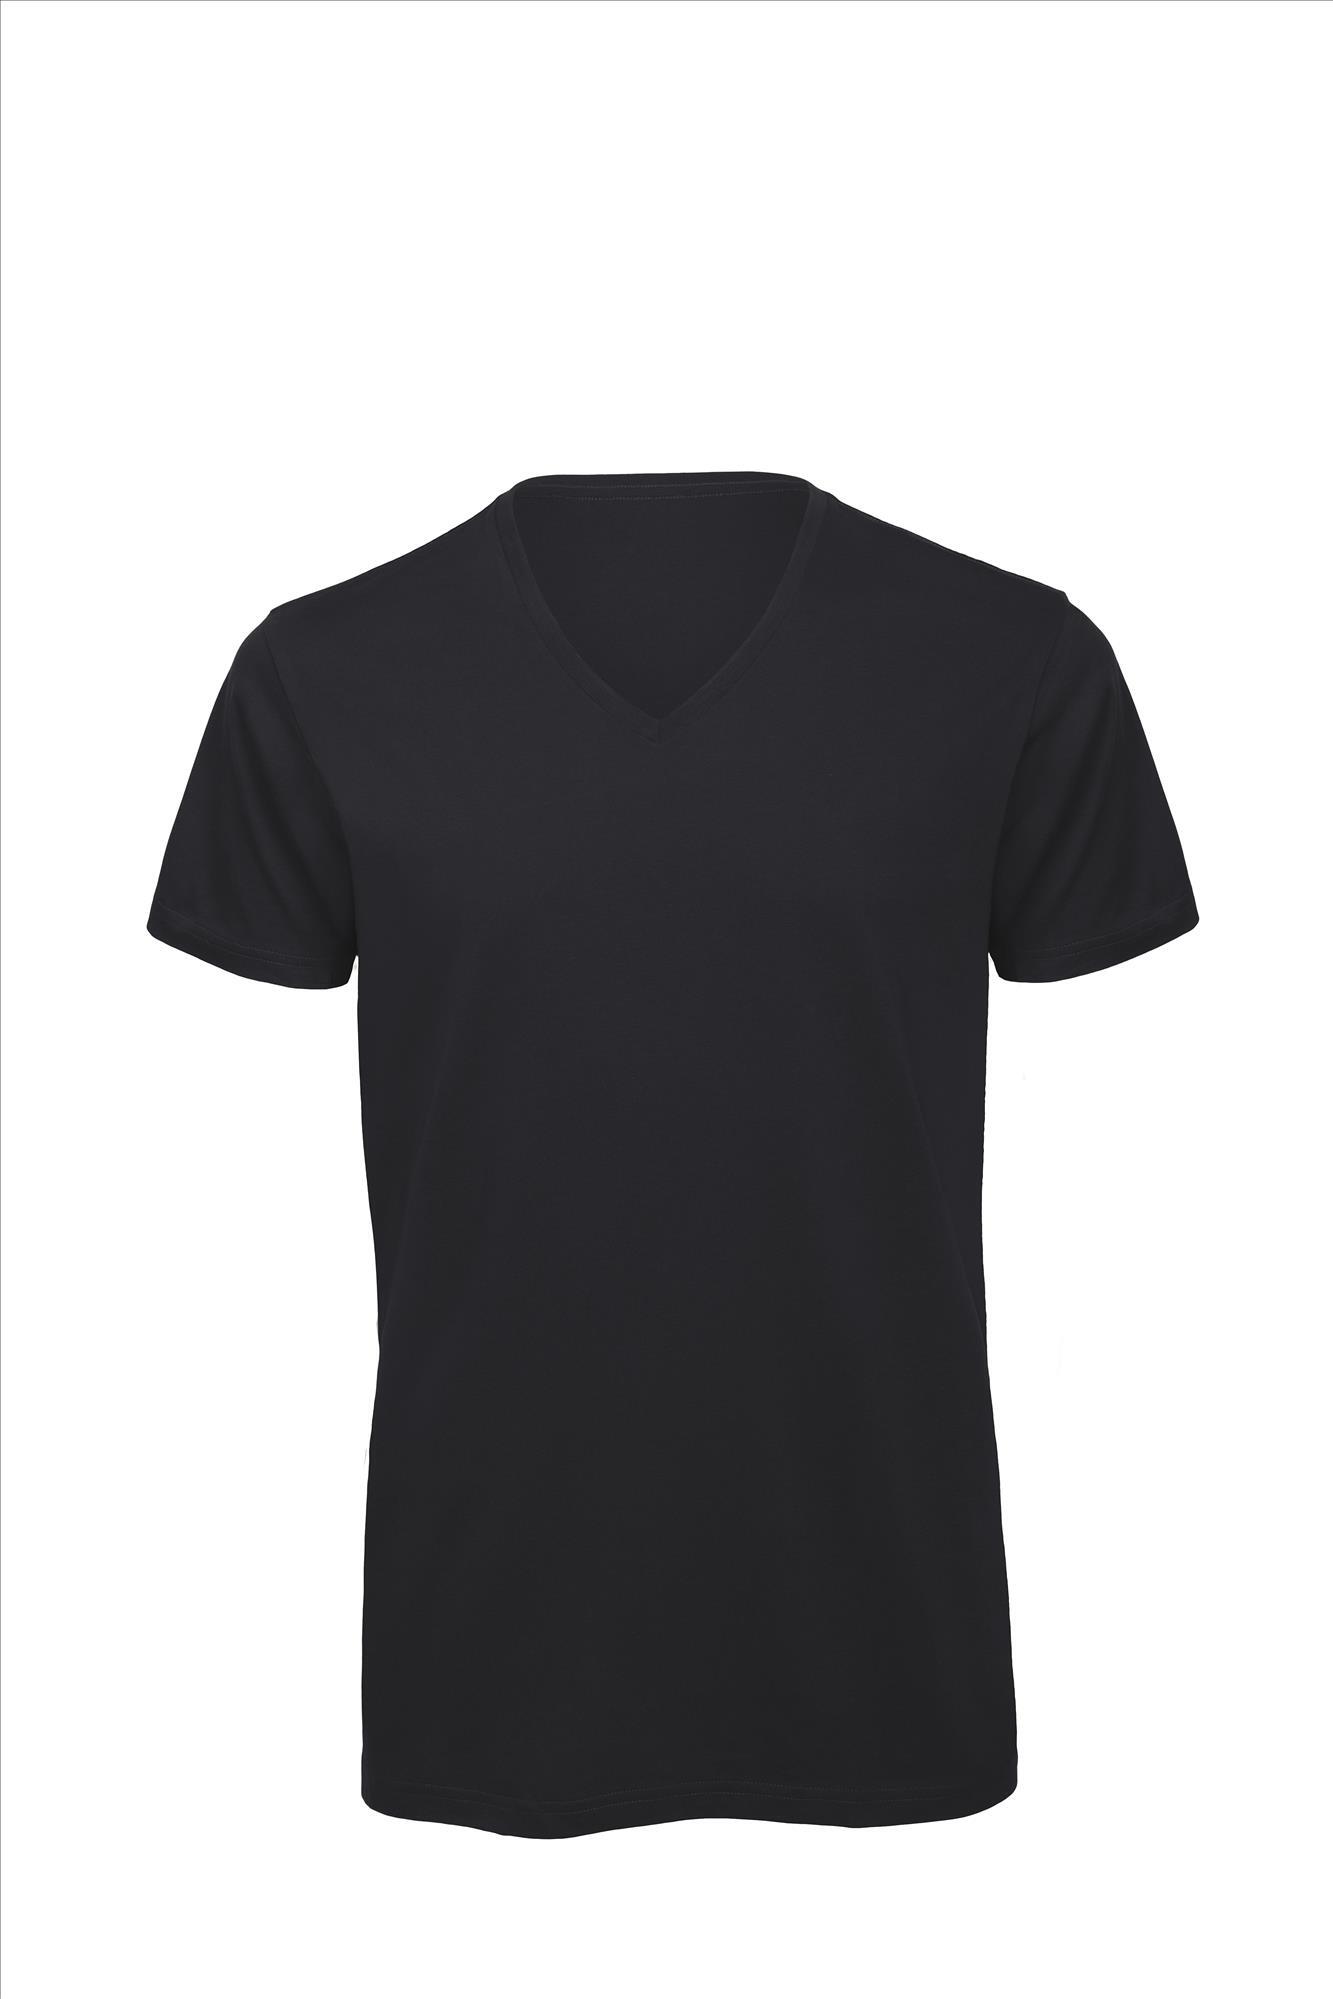 T-shirt met V-hals voor heren donkerblauw Luxe bio kwaliteit